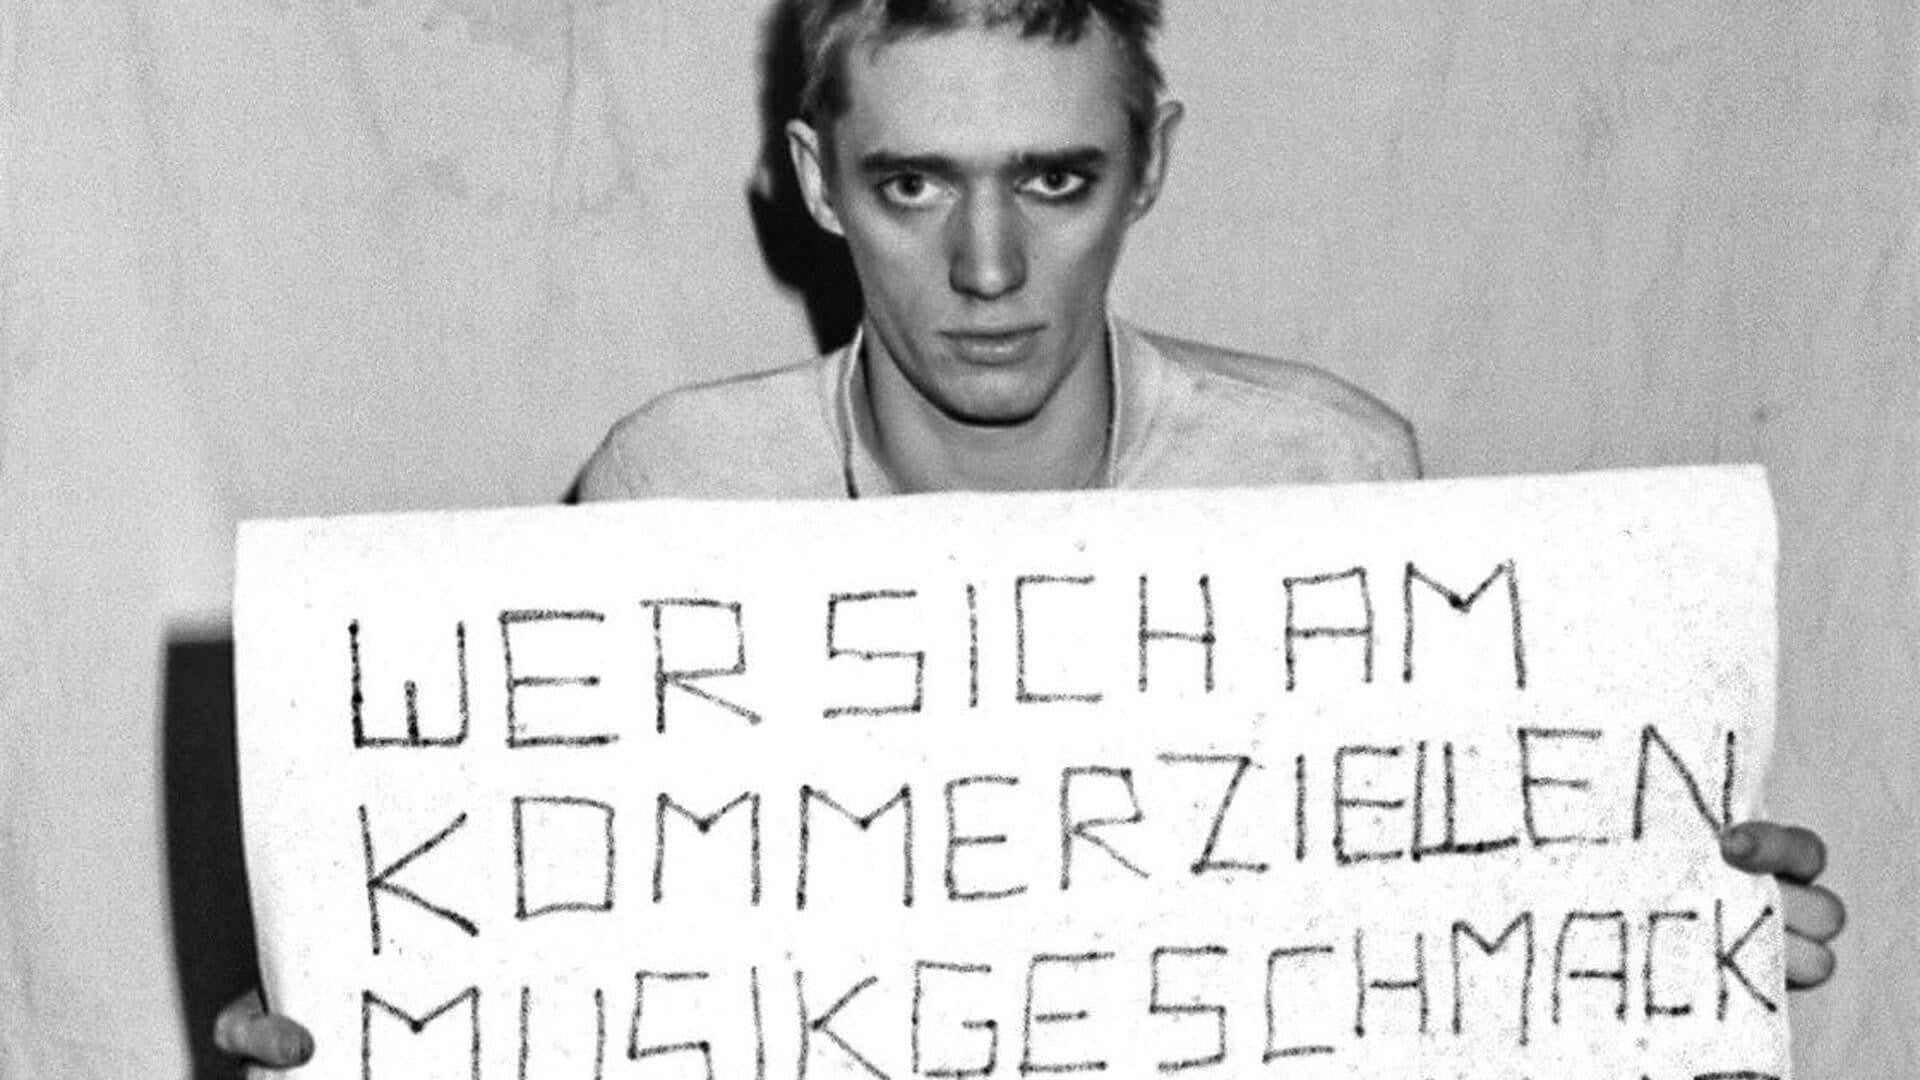 37 Years Ago: EINSTURZENDE NEUBAUTEN record Stahlmusik in a West Berlin bridge